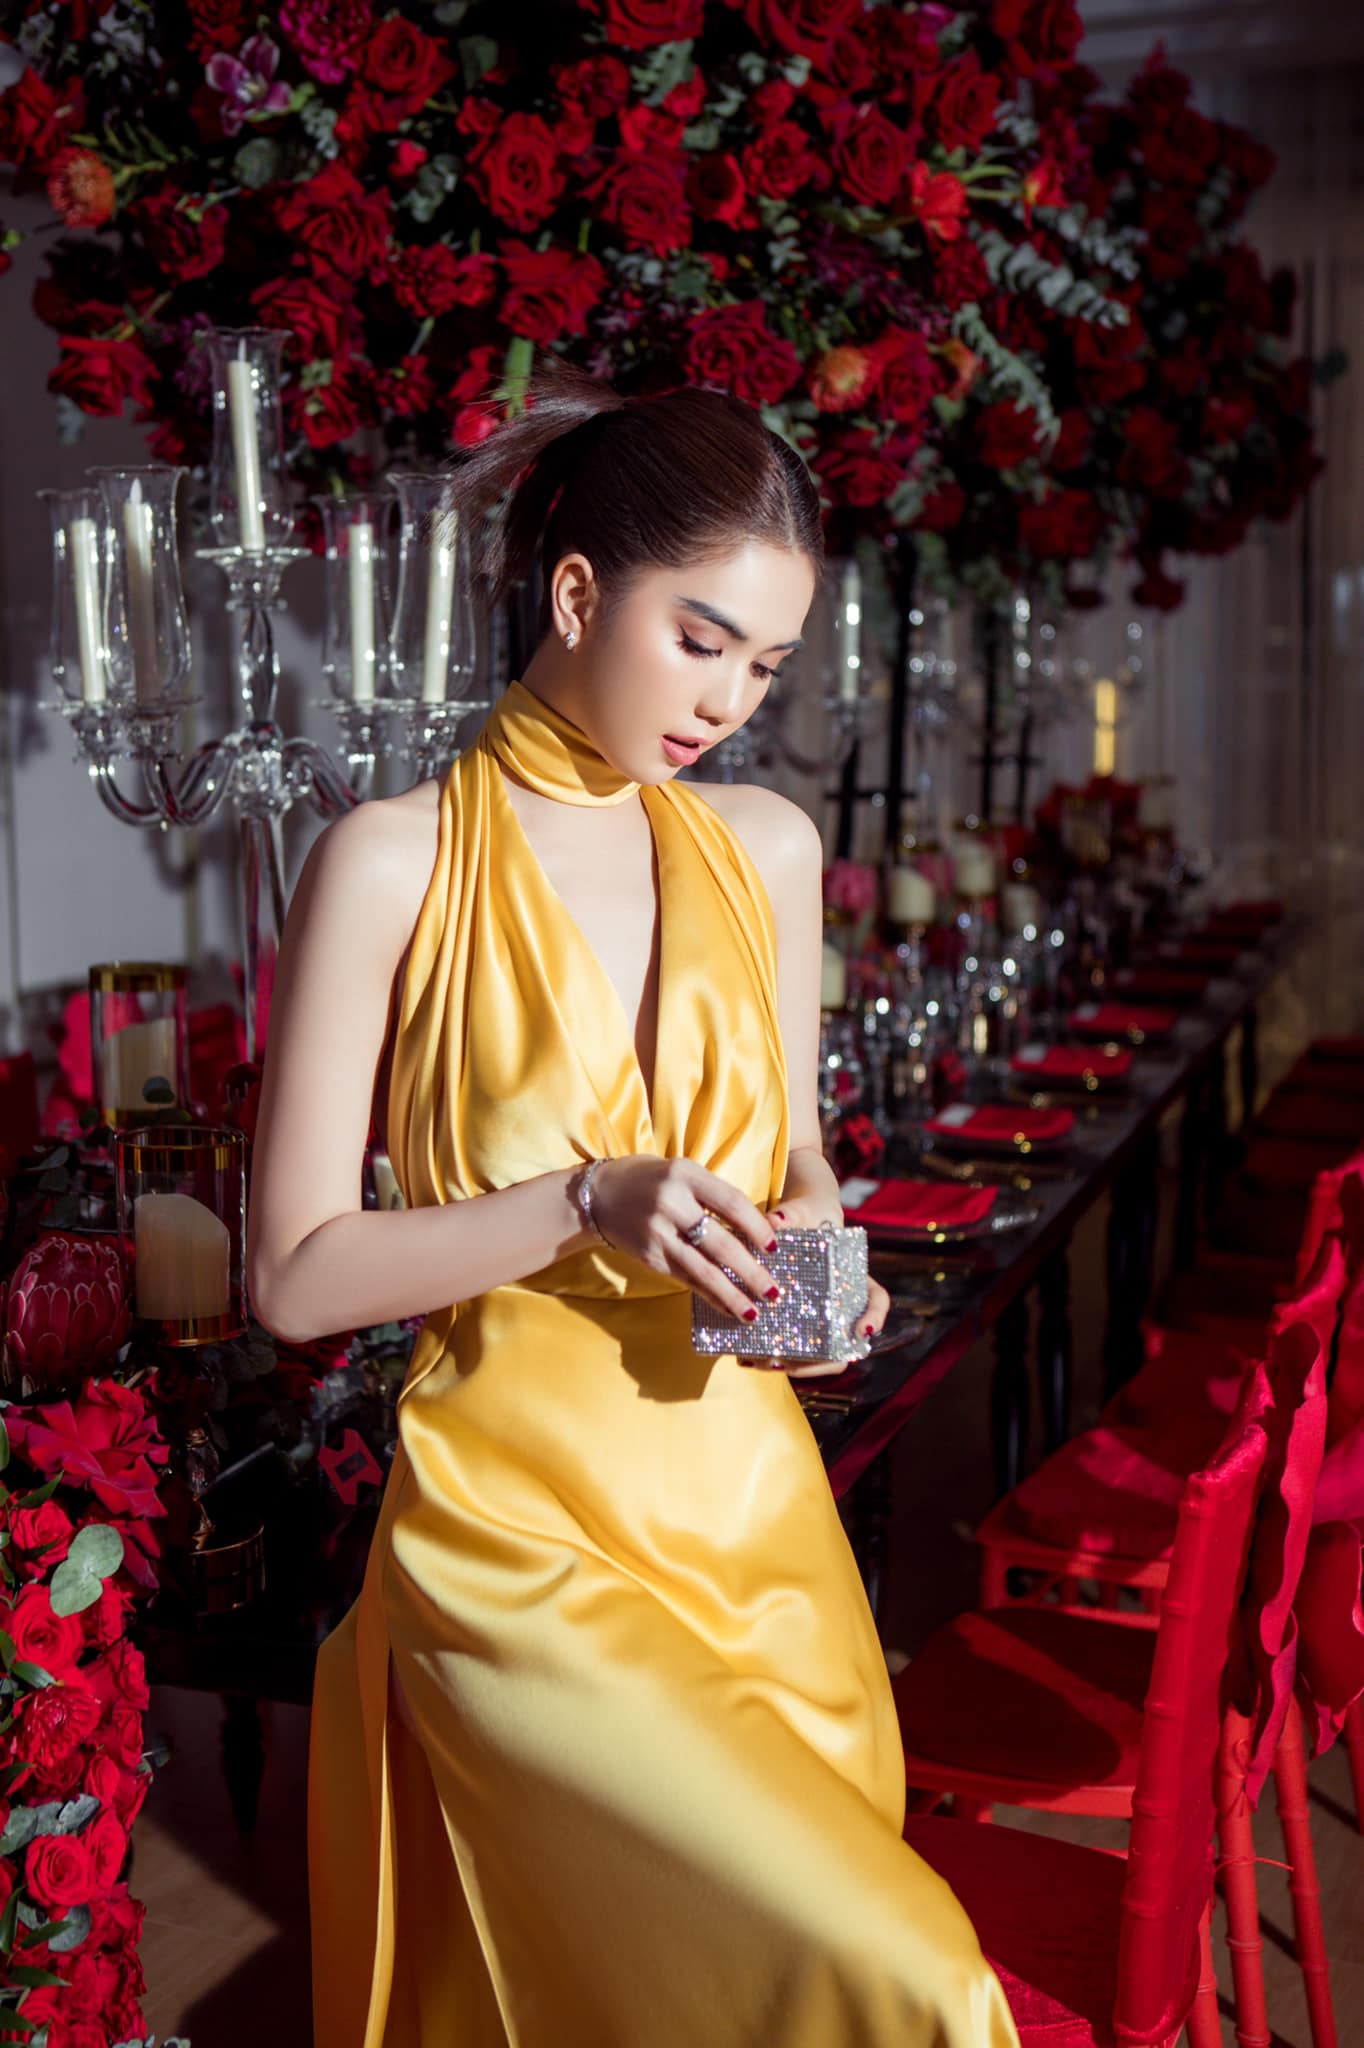 Sao Việt đồng loạt diện sắc vàng trong tuần: Ngọc Trinh nổi bật, Kỳ Duyên trở lại hình ảnh 'beauty queen' - ảnh 1